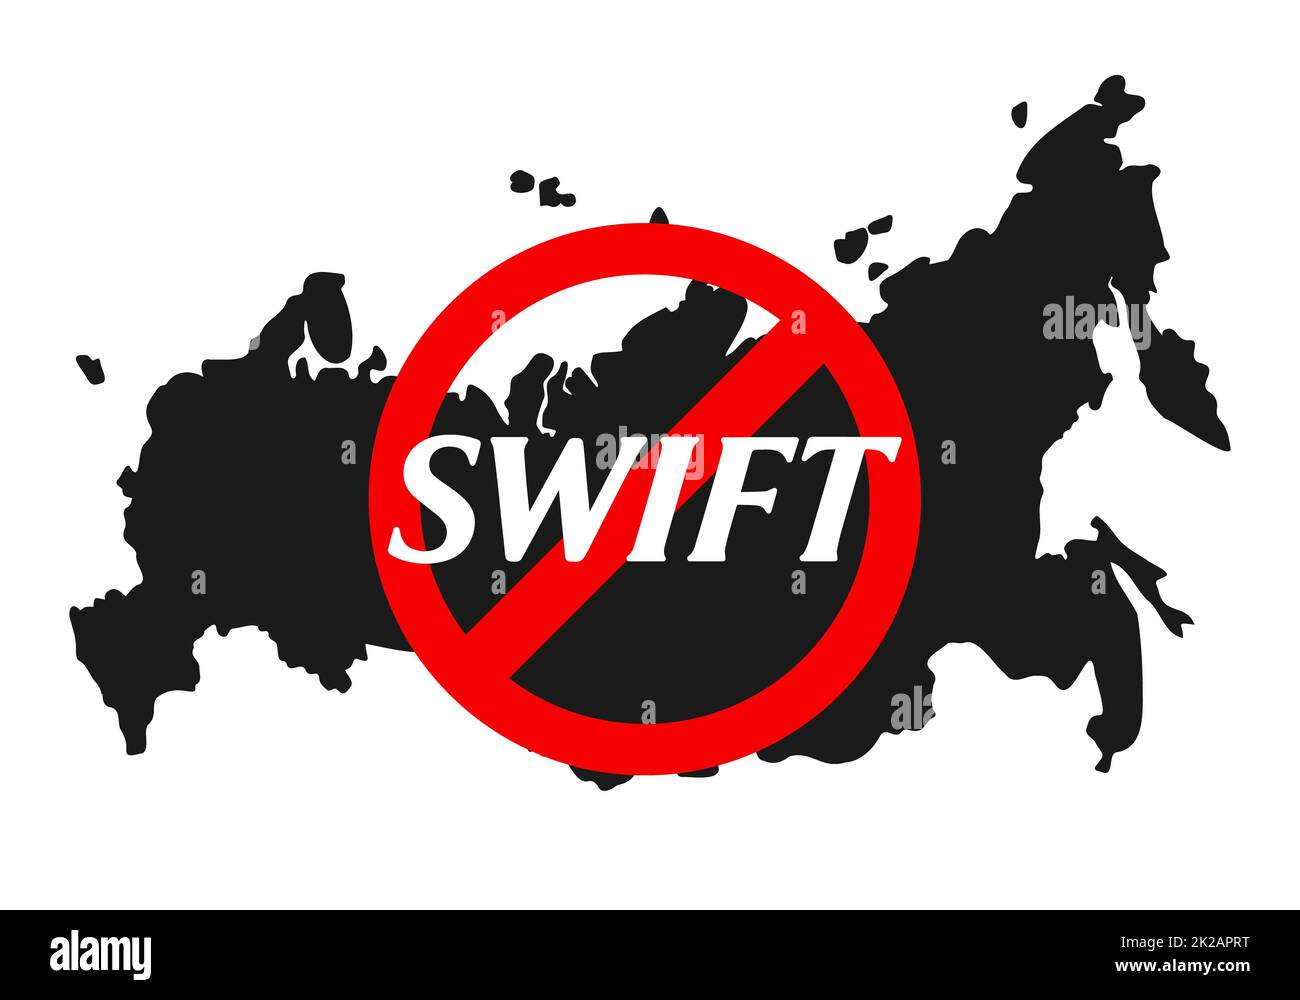 Testo del sistema finanziario Swift vietato sotto il segnale di divieto rosso con la mappa russa in background. Sanzioni contro la Russia, e il distacco da Swift attraverso la guerra contro la pacifica Ucraina. Foto Stock